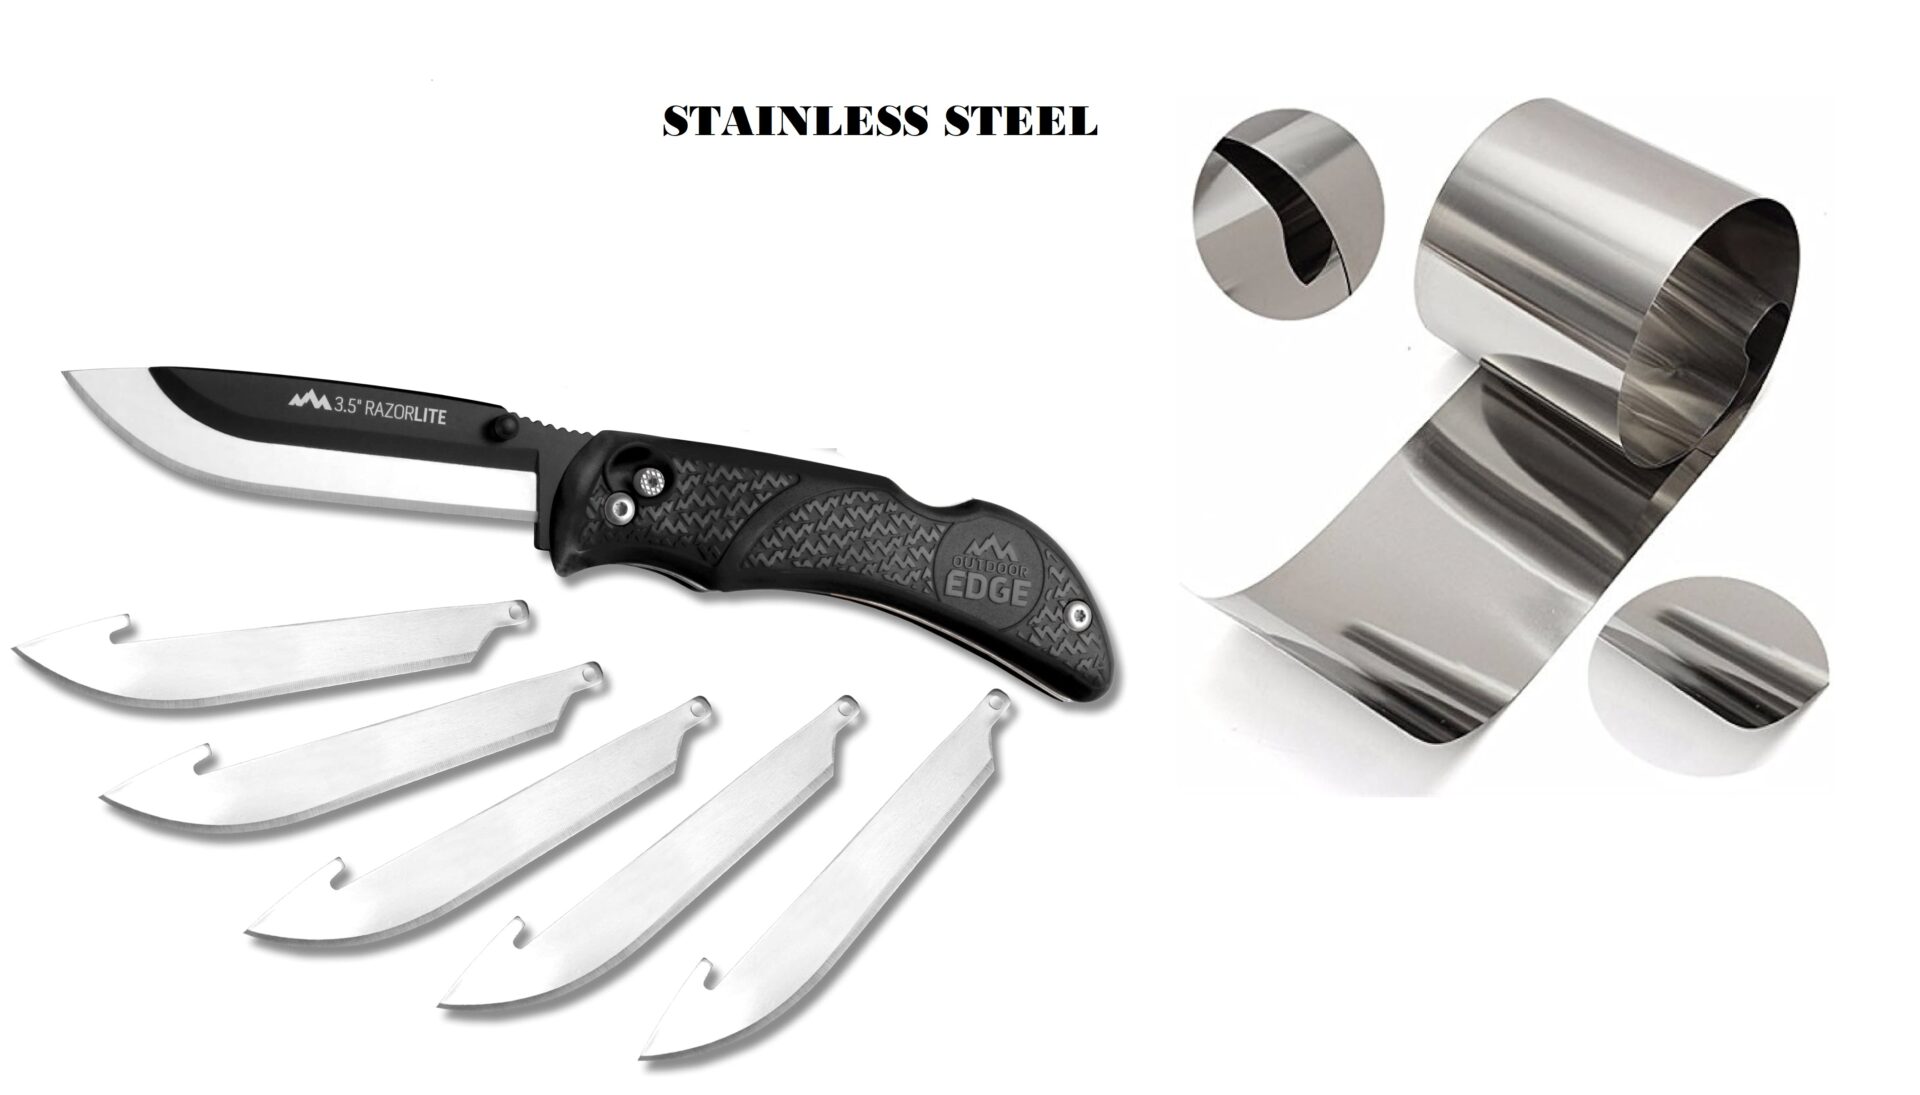 migliori coltelli per arrosto, coltello, lame, acciaio, costruzione e materiale della lama